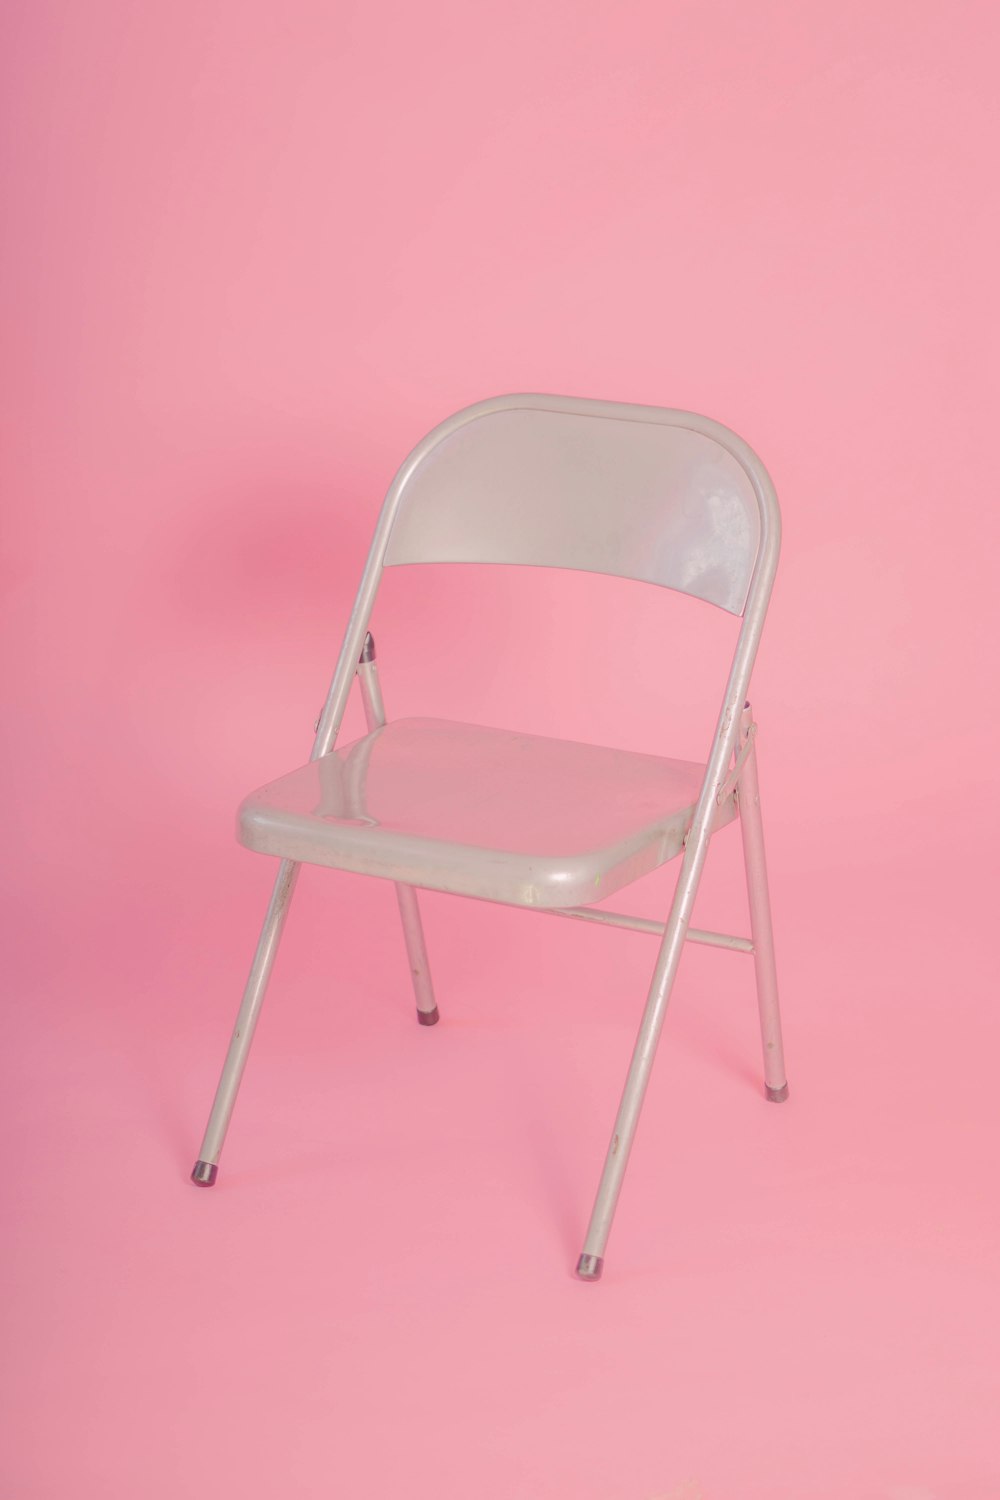 silla plegable de metal blanco